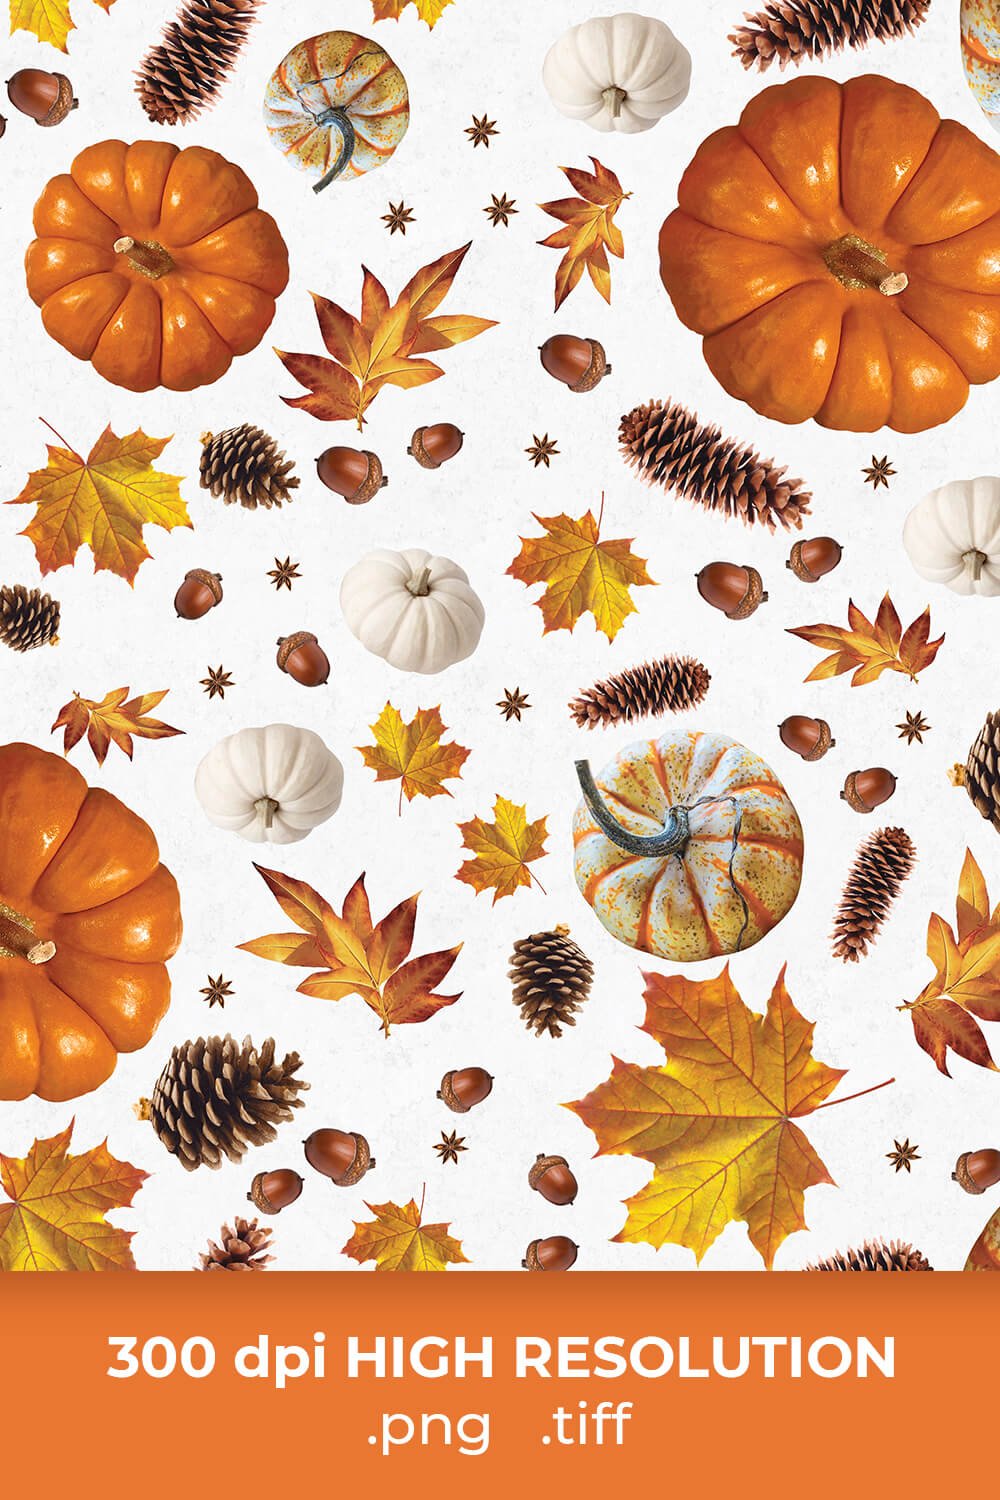 Free White Thanksgiving Patterns pinterest image.